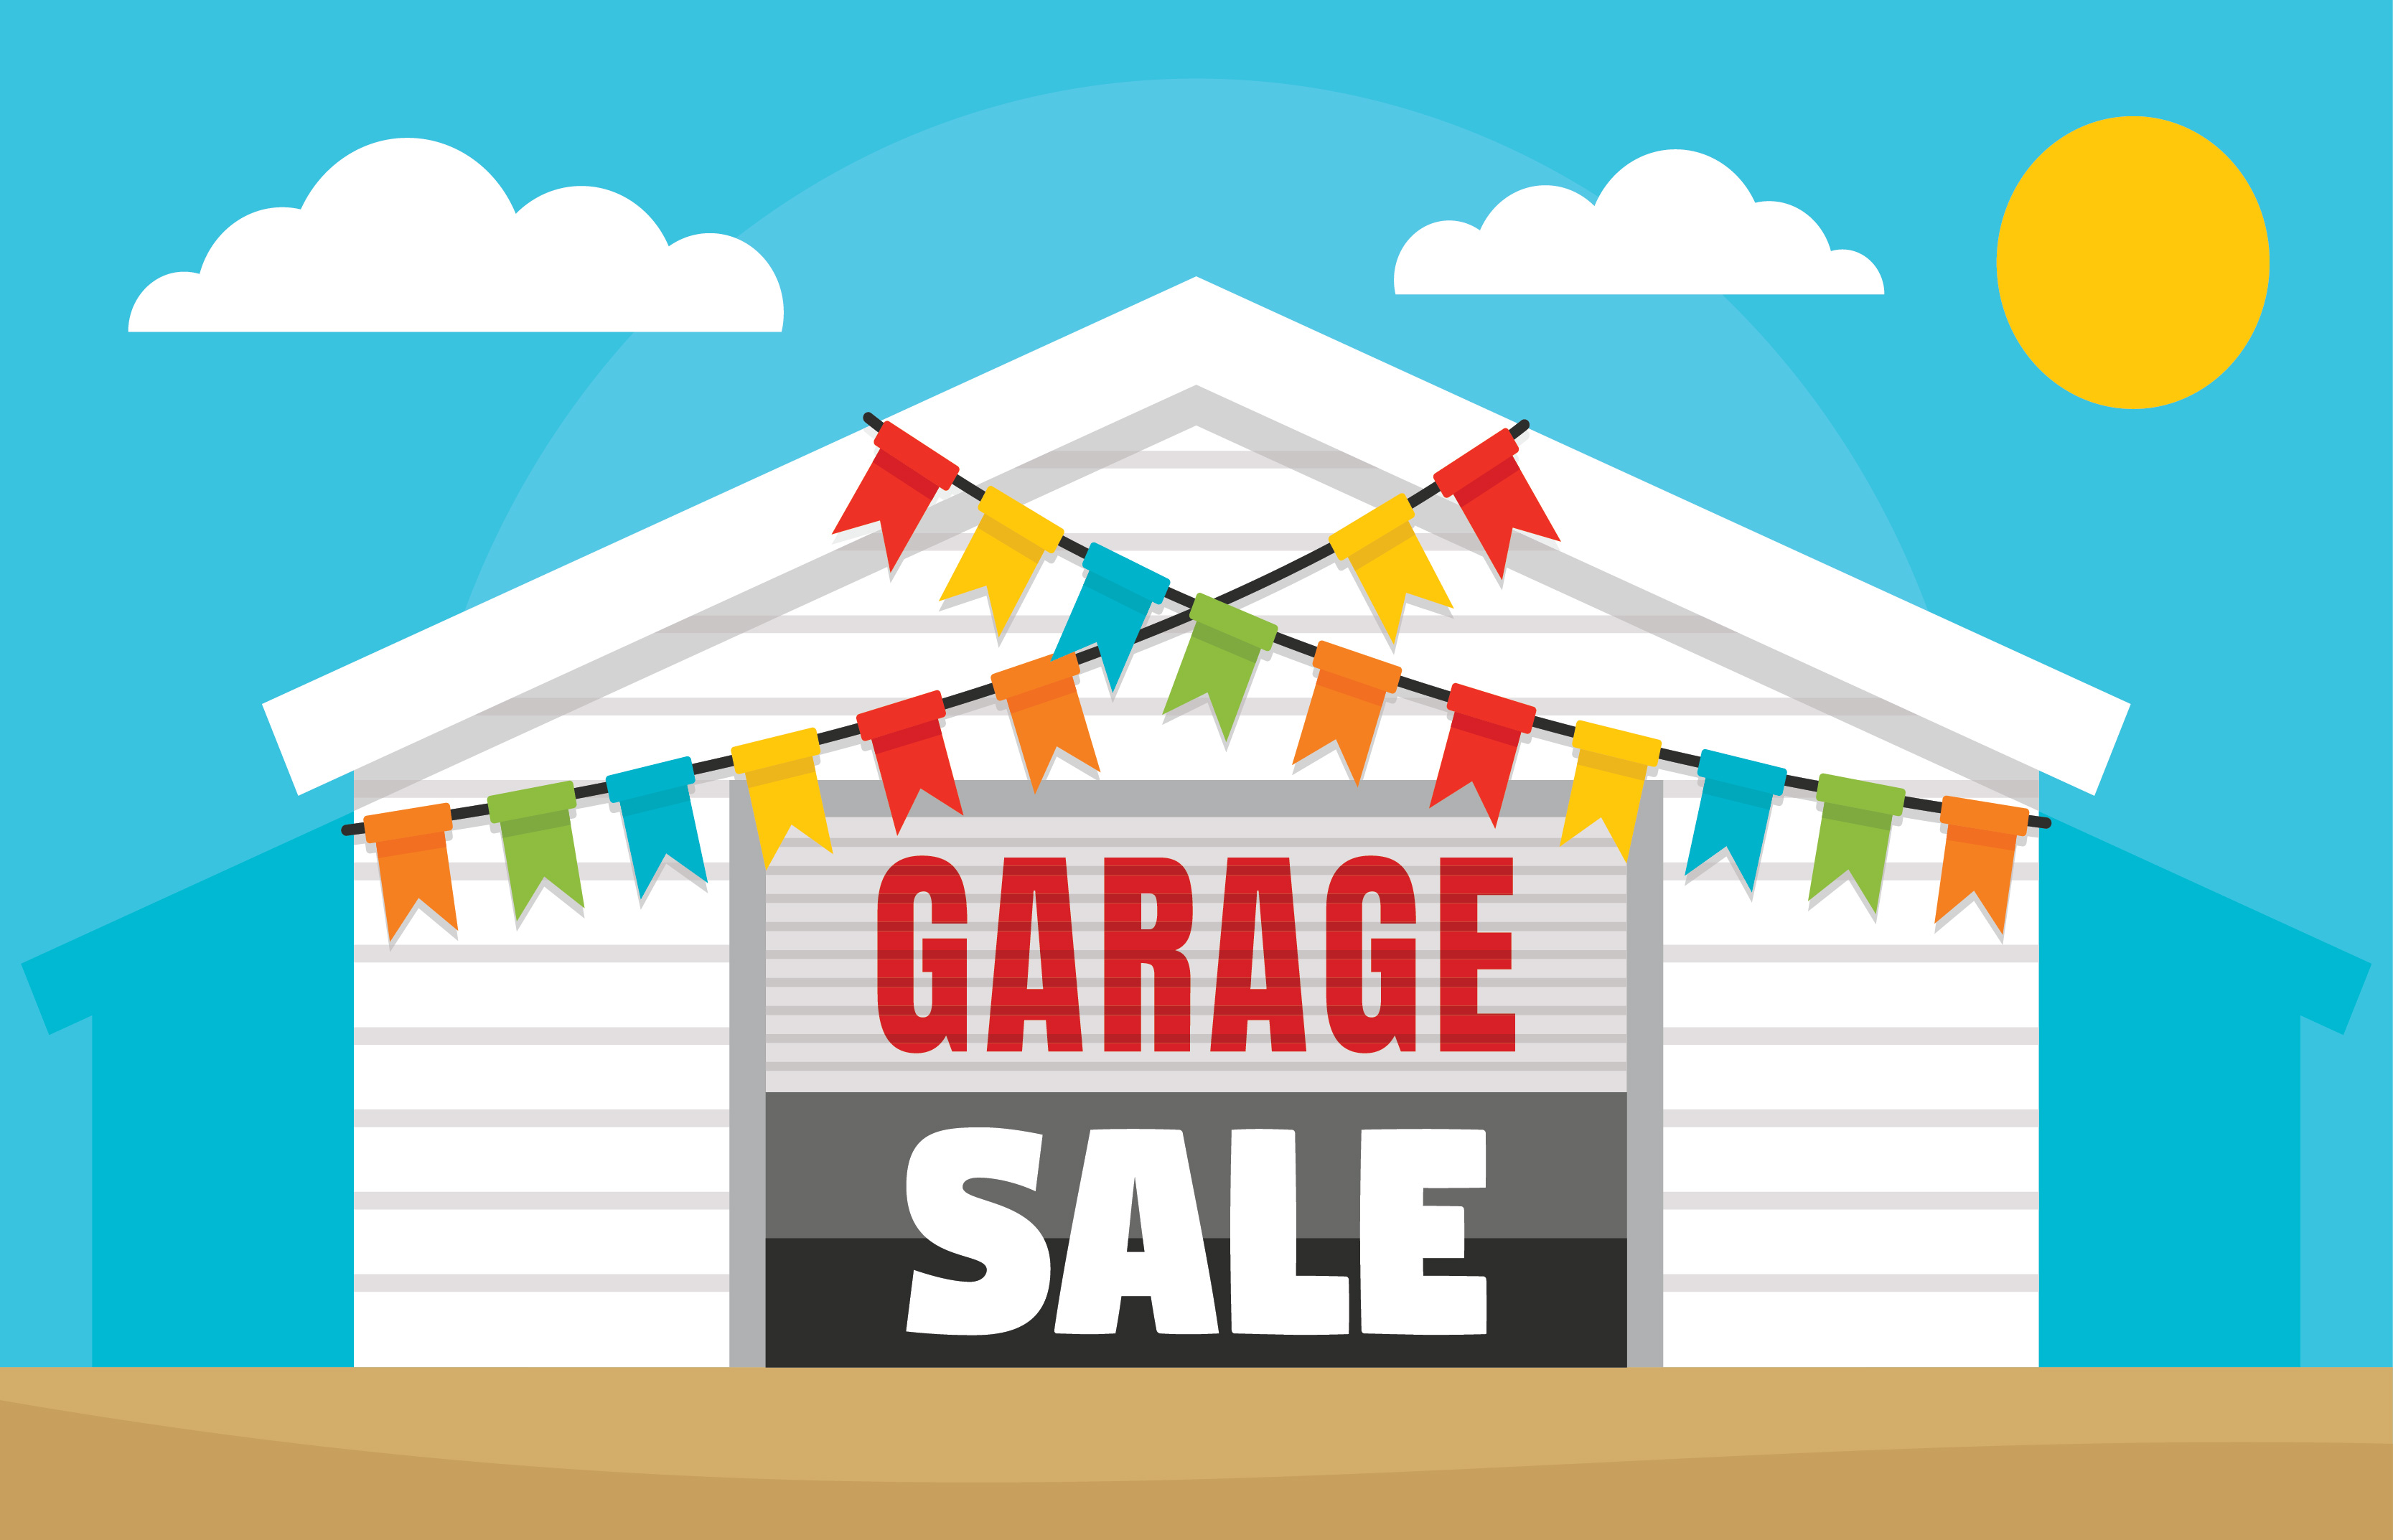 Copper Village Fall Community Garage Sale Set for October 7